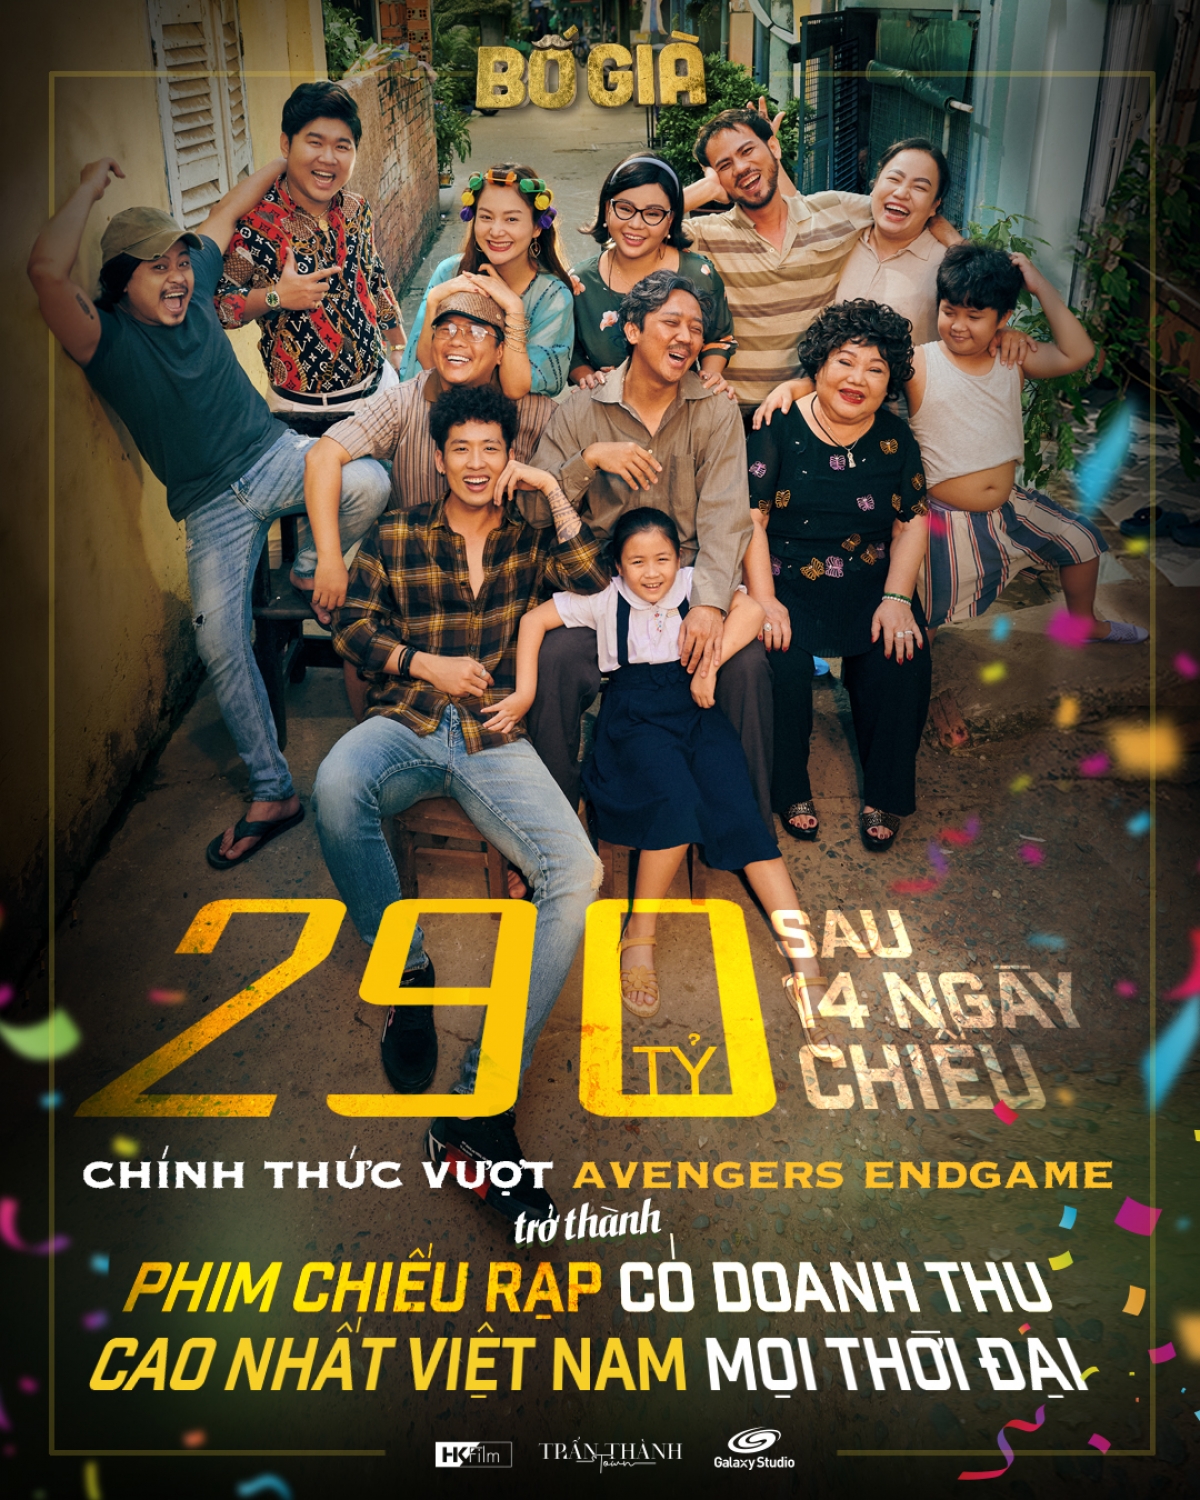 Đánh bại hàng loạt đối thủ nặng ký trước đó, 'Bố già' của Trấn Thành hiện đang giữ 'ngôi vương' về thành tích phim chiếu rạp có doanh thu cao nhất Việt Nam mọi thời đại